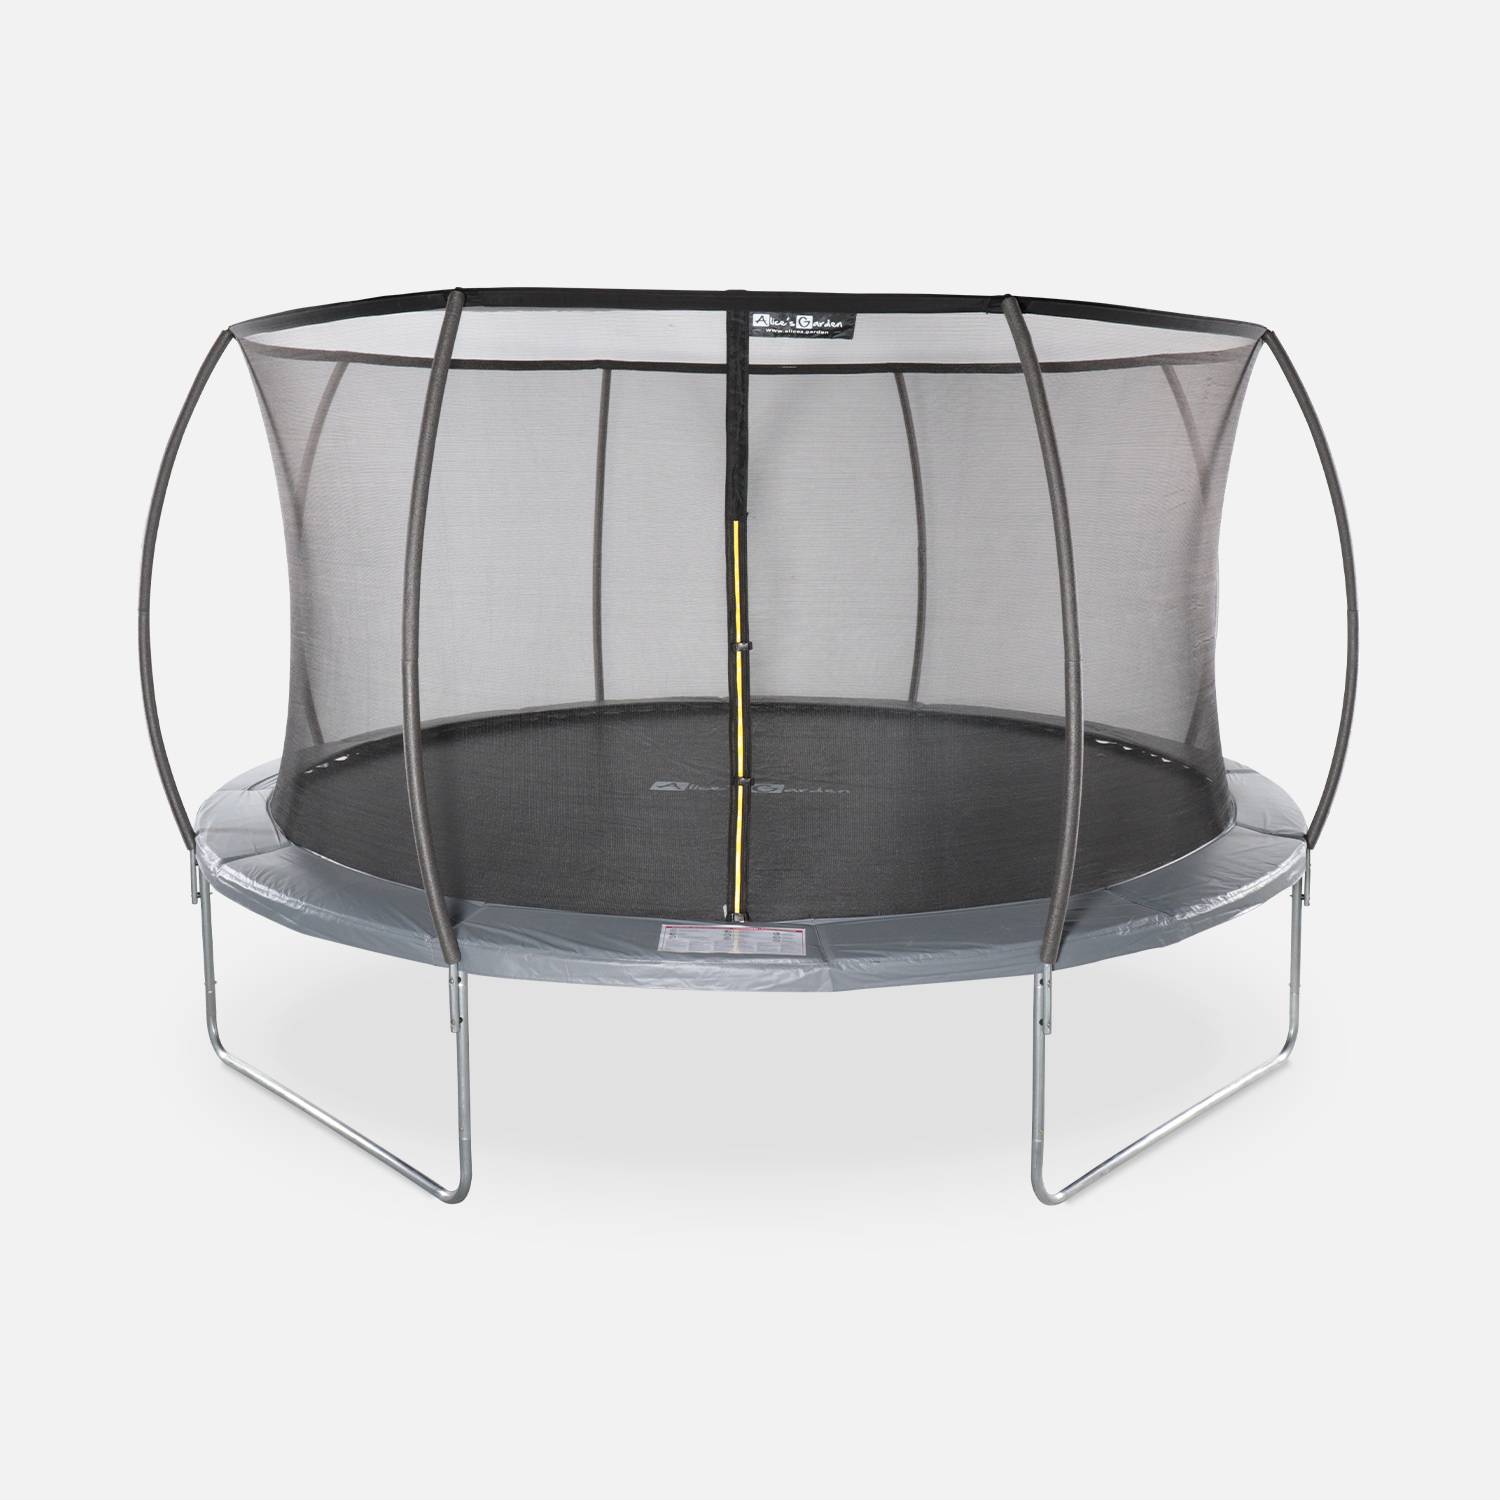 Trampoline rond Ø 430cm grijs met veiligheidsnet aan binnenzijde -Vénus Inner – Nieuw model - trampoline voor tuin 4,3m 430 cm |Kwaliteit PRO. | EU Normen. Photo1